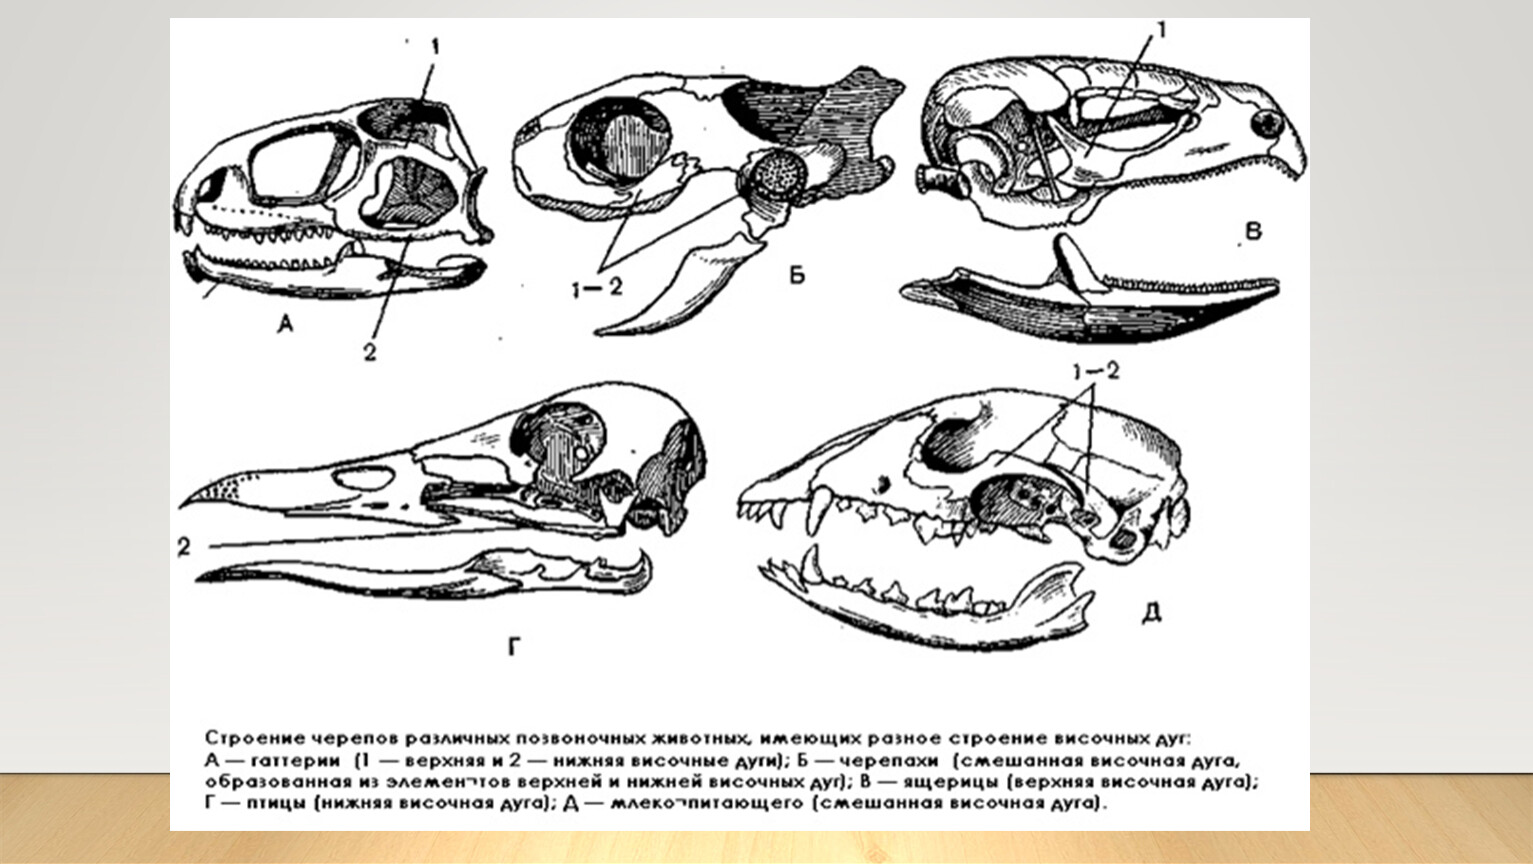 Появление челюстей у позвоночных. Филогенез черепа позвоночных. Эволюция висцерального черепа позвоночных. Филогенез висцерального черепа позвоночных. Эволюция скелета черепа у позвоночных.